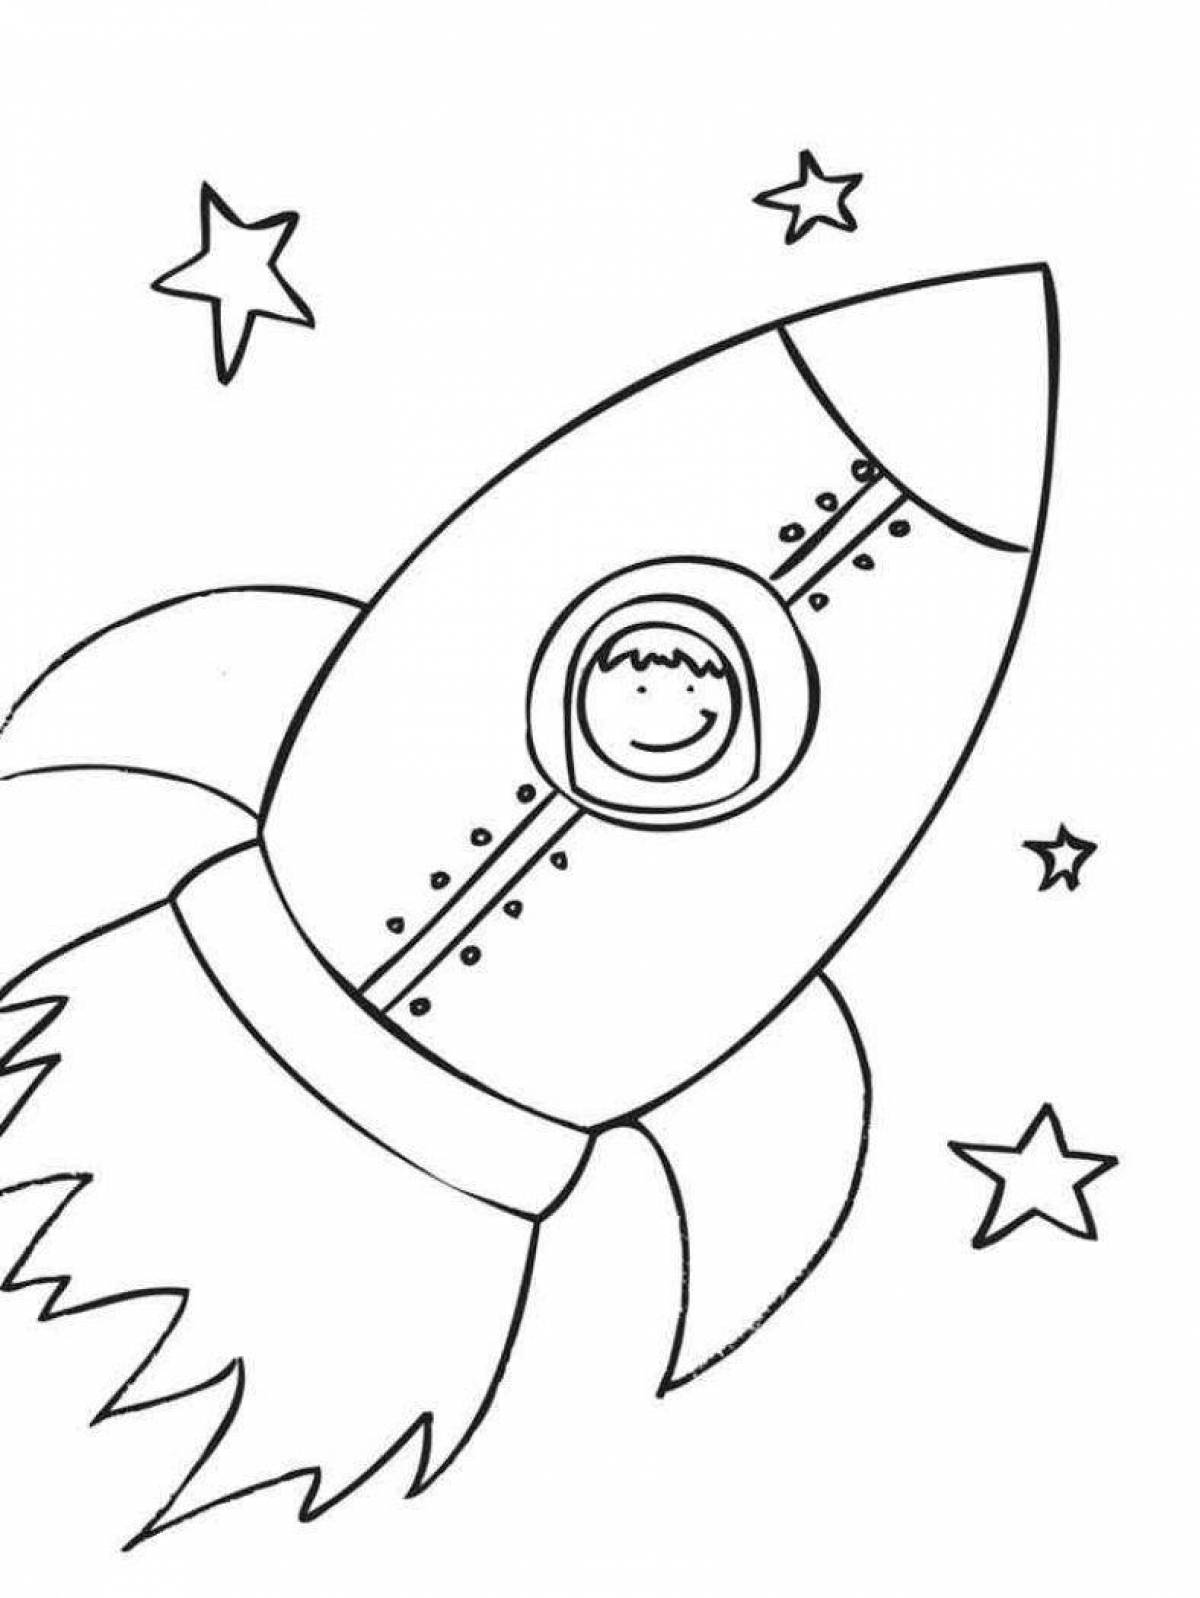 Шаблон космонавта для аппликации для детей. Ракета раскраска. Раскраска для малышей. Космос. Космос раскраска для детей. Ракета раскраска для детей.